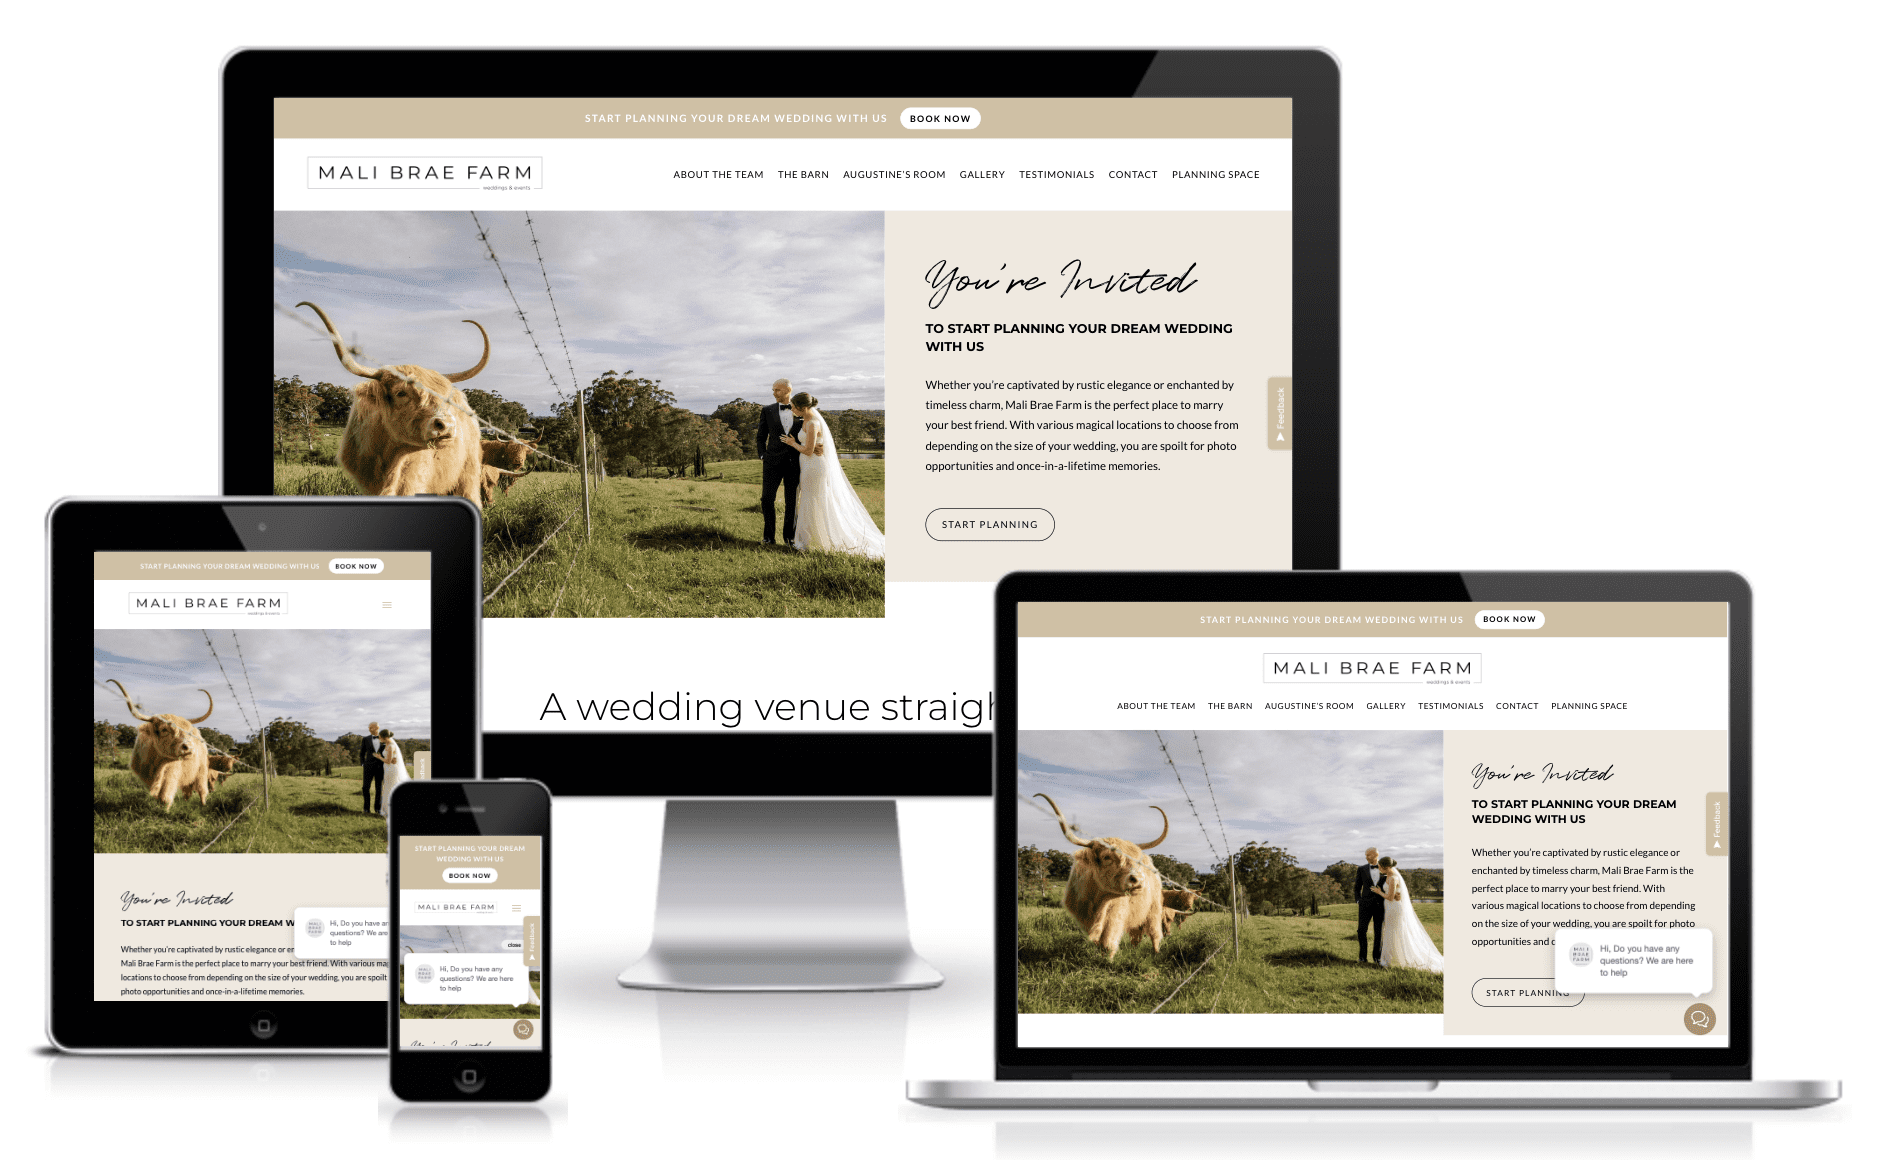 responsive website design of a wedding venue